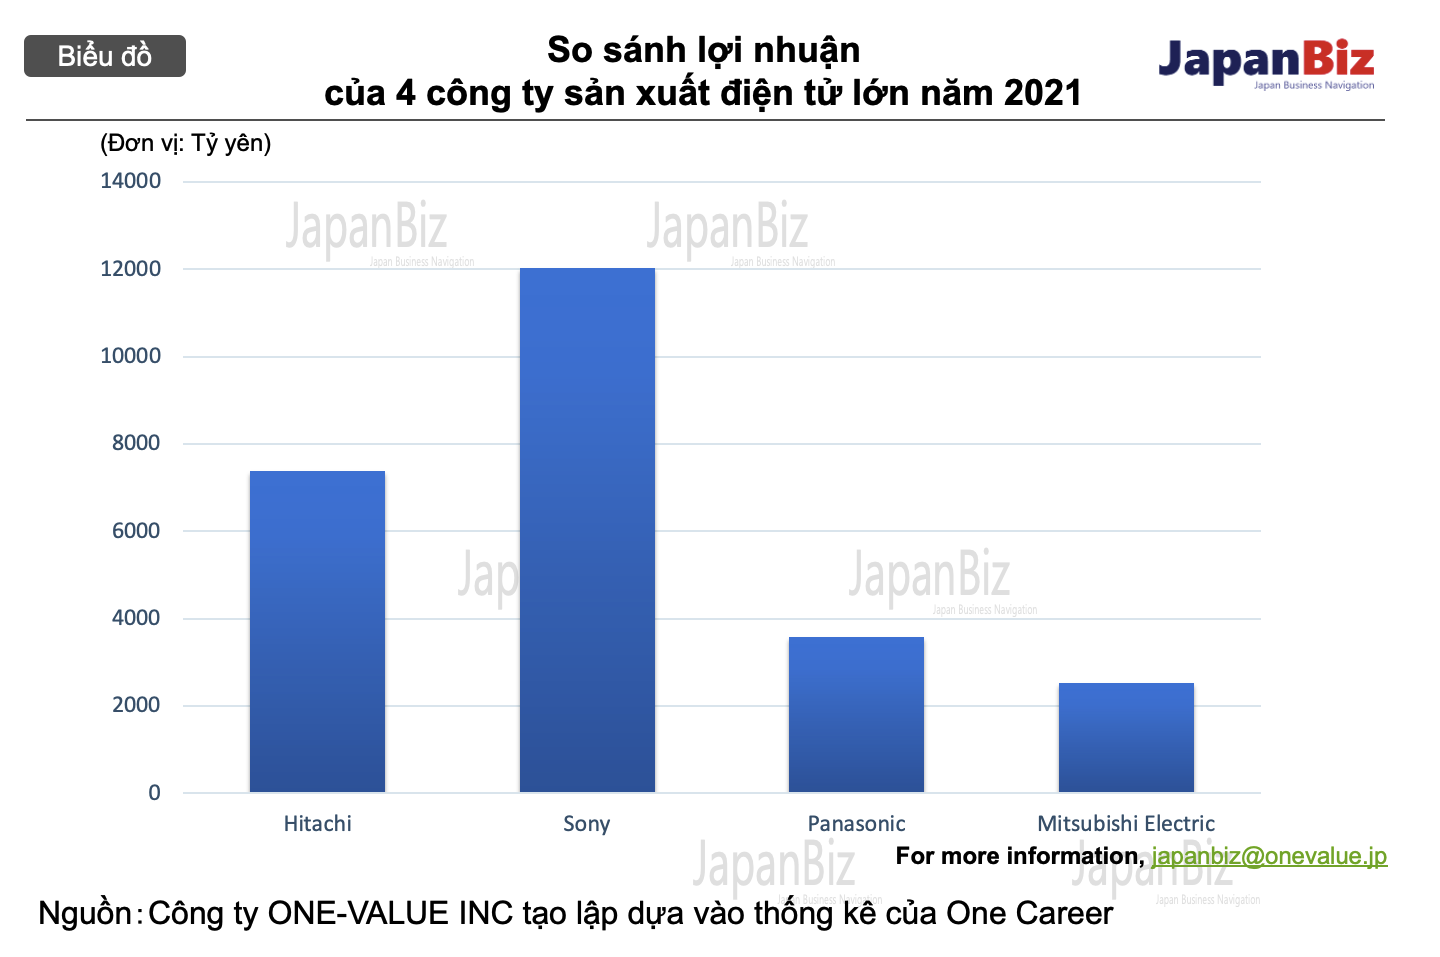 So sách lợi nhuận của 4 công ty điện tử Nhật Bản lớn năm 2021